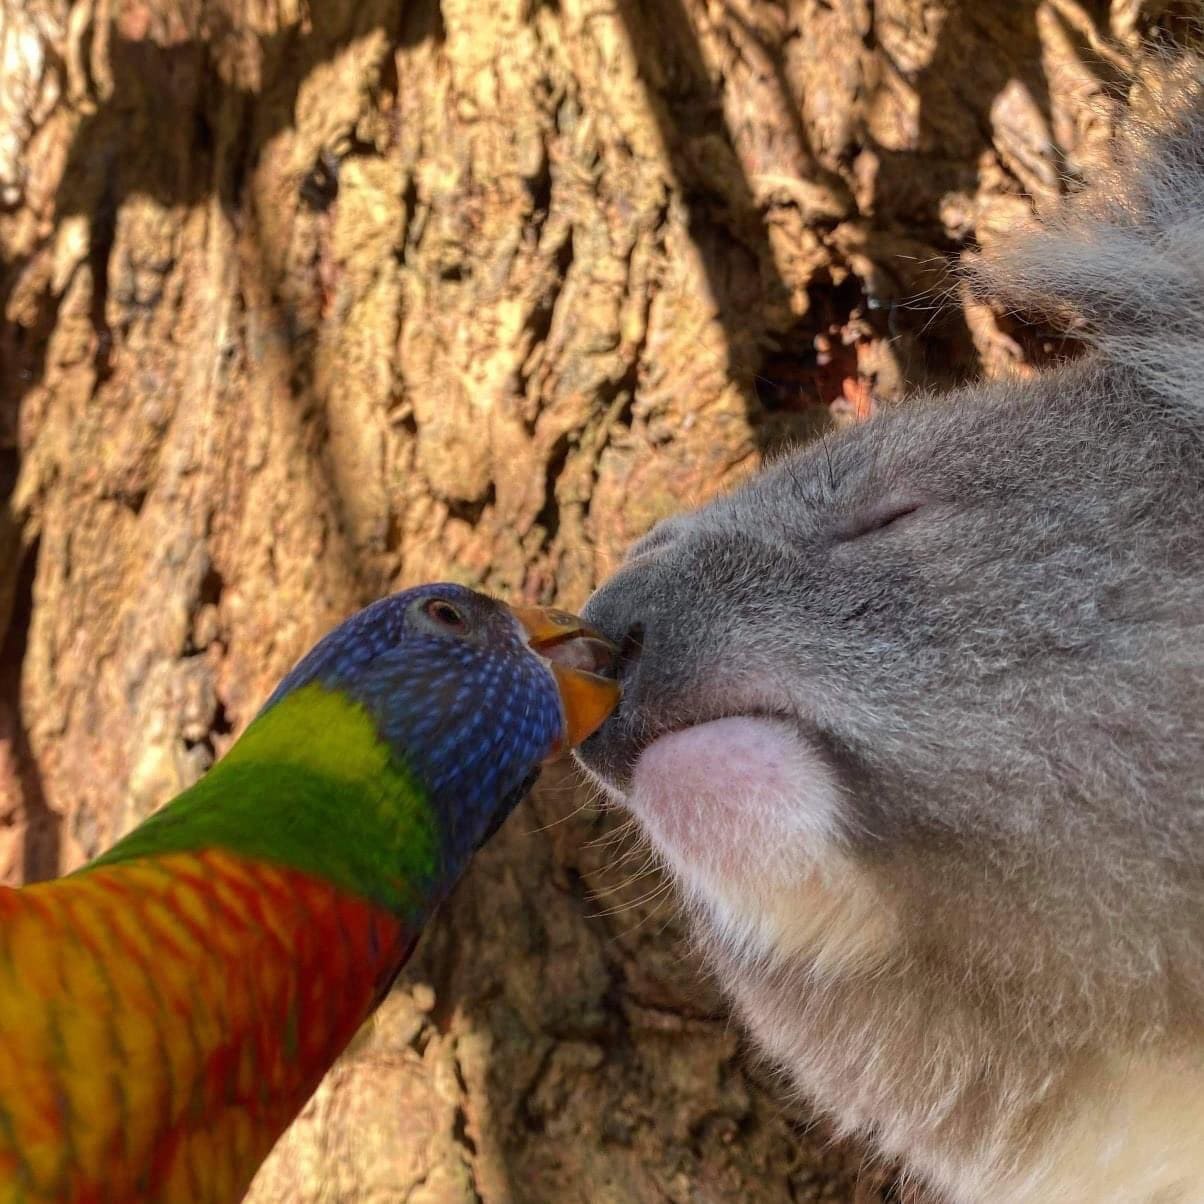 Rainbow parrot kisses a koala